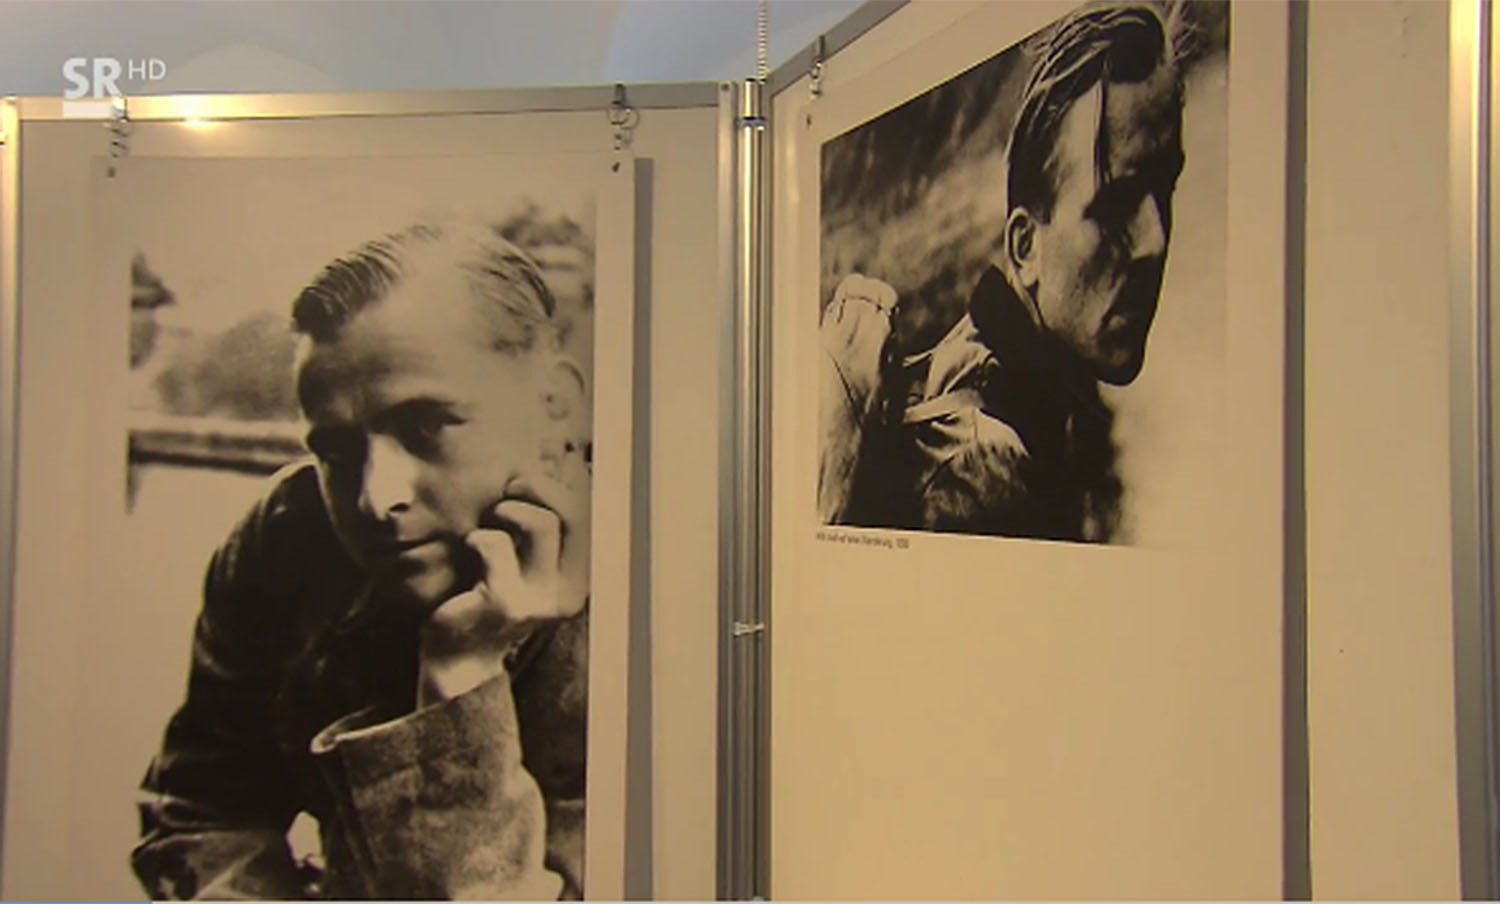 Bilder von zwei Mitgliedern der Weißen Rose in der Ausstellung